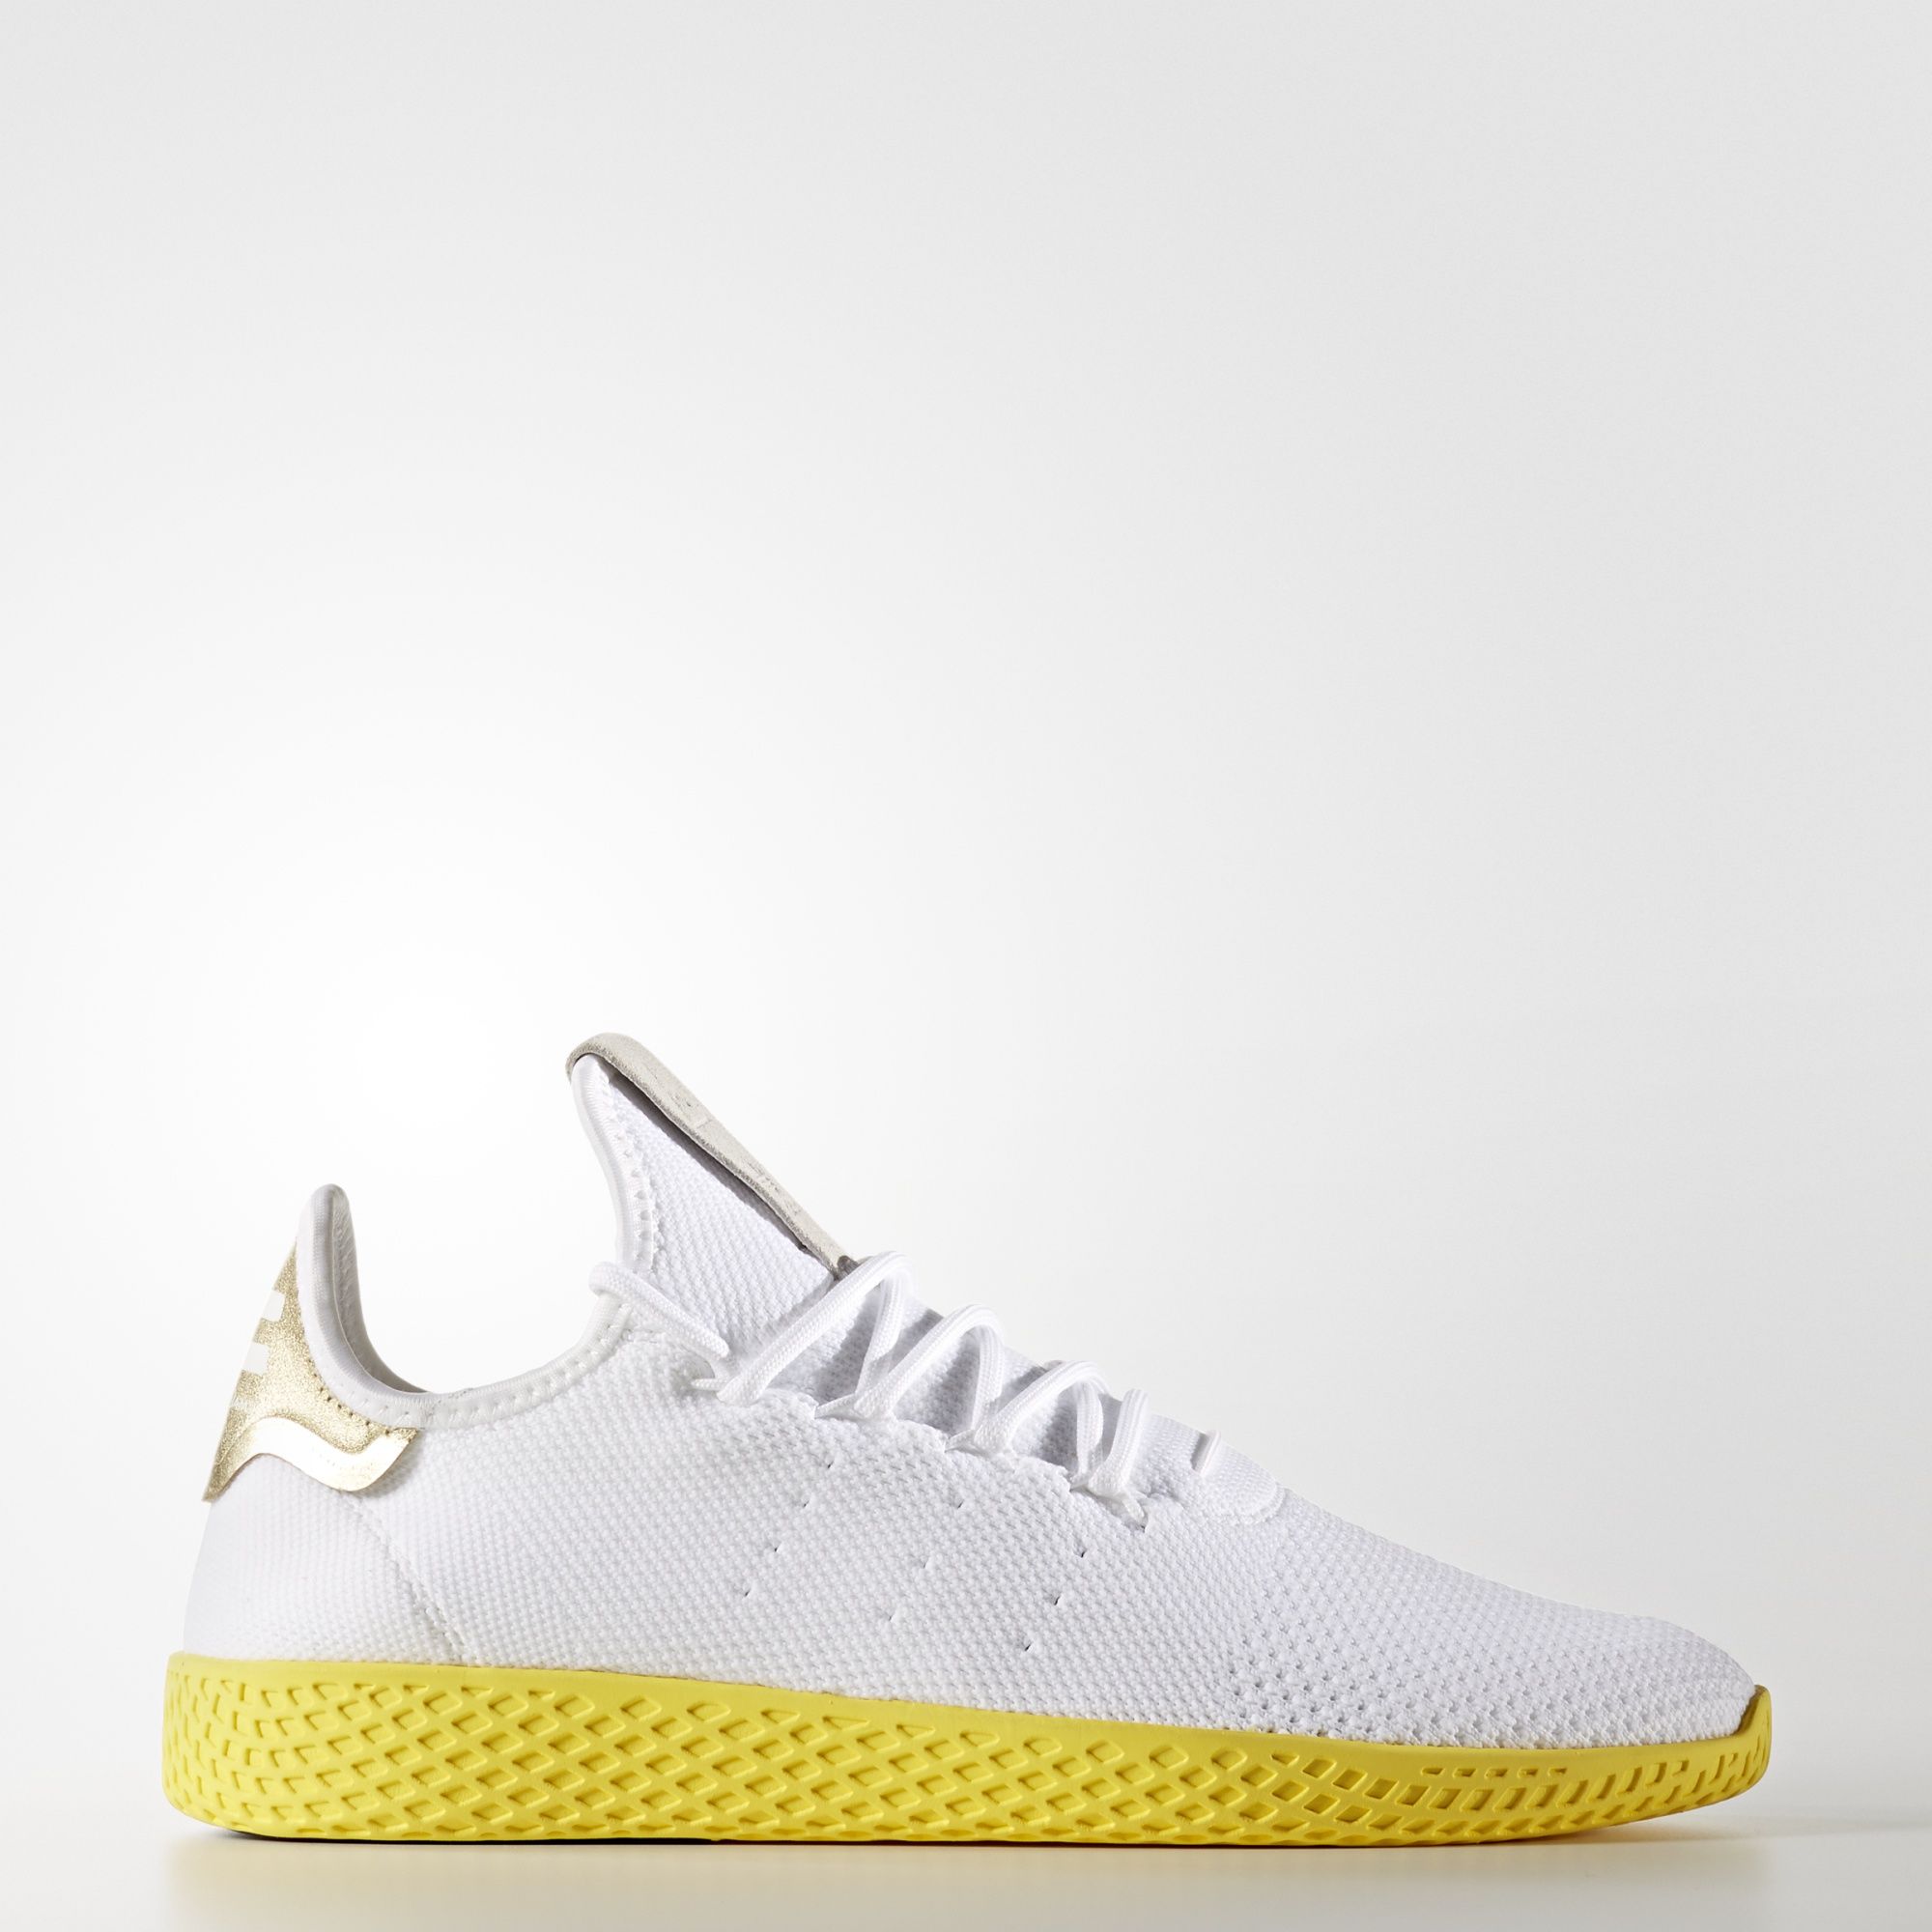 adidas-x-pharrell-tennis-hu-white-yellow-2